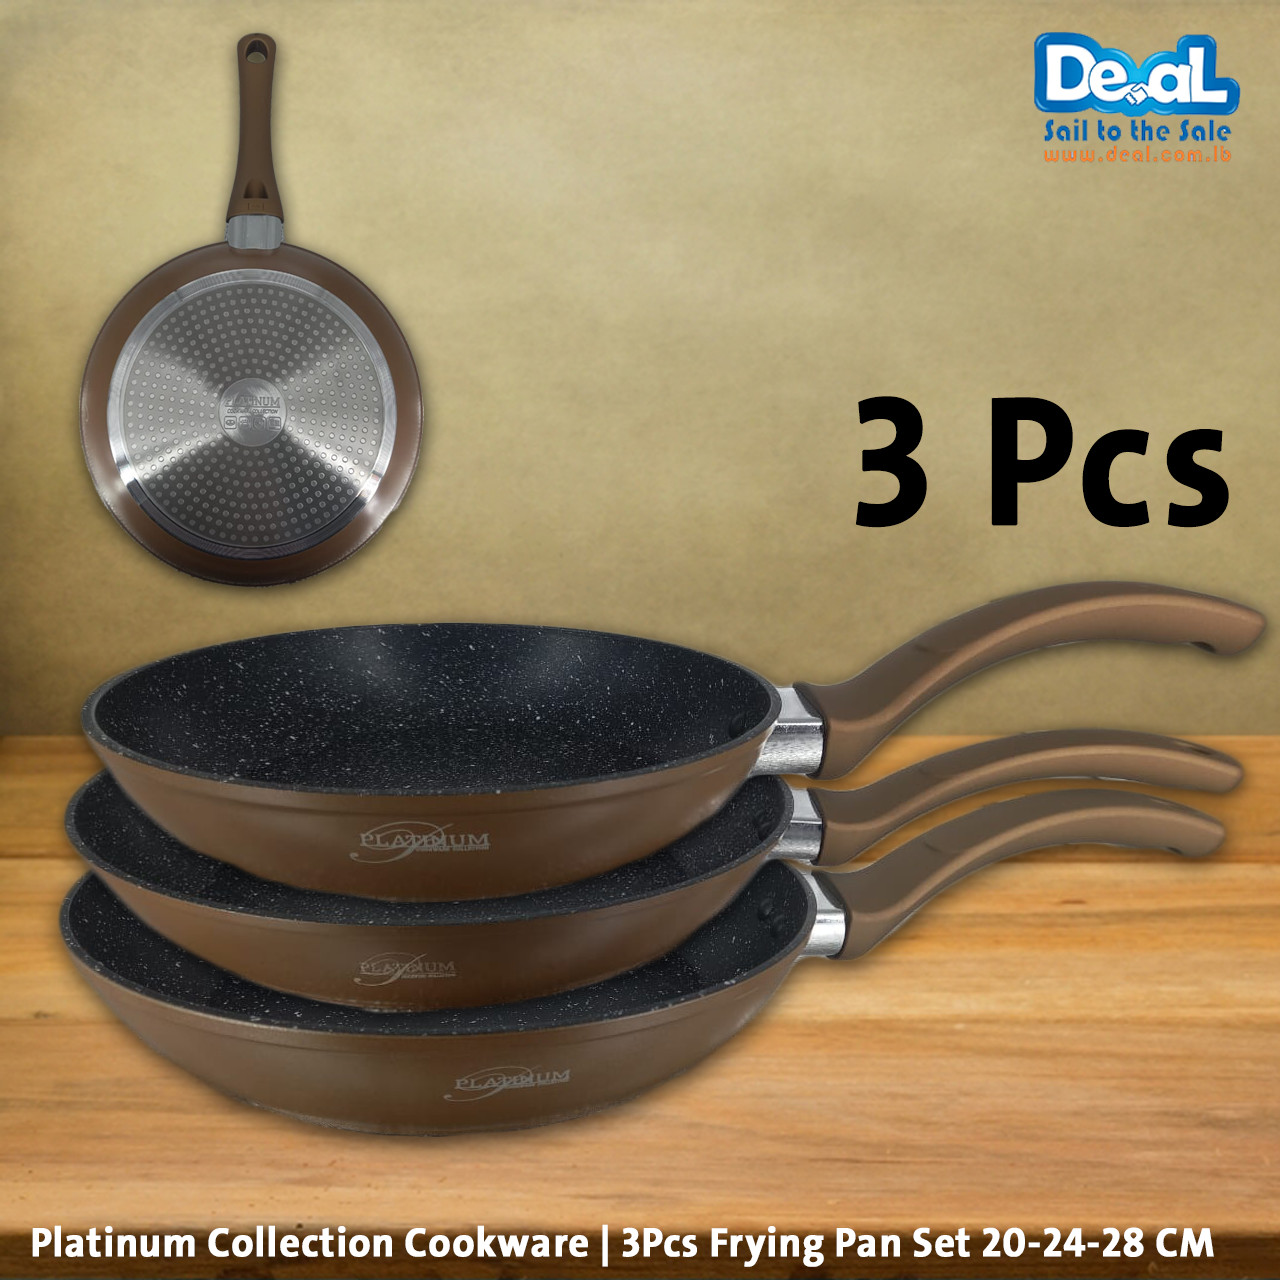 Platinum Collection Cookware | 3Pcs Frying Pan Set 20-24-28 CM